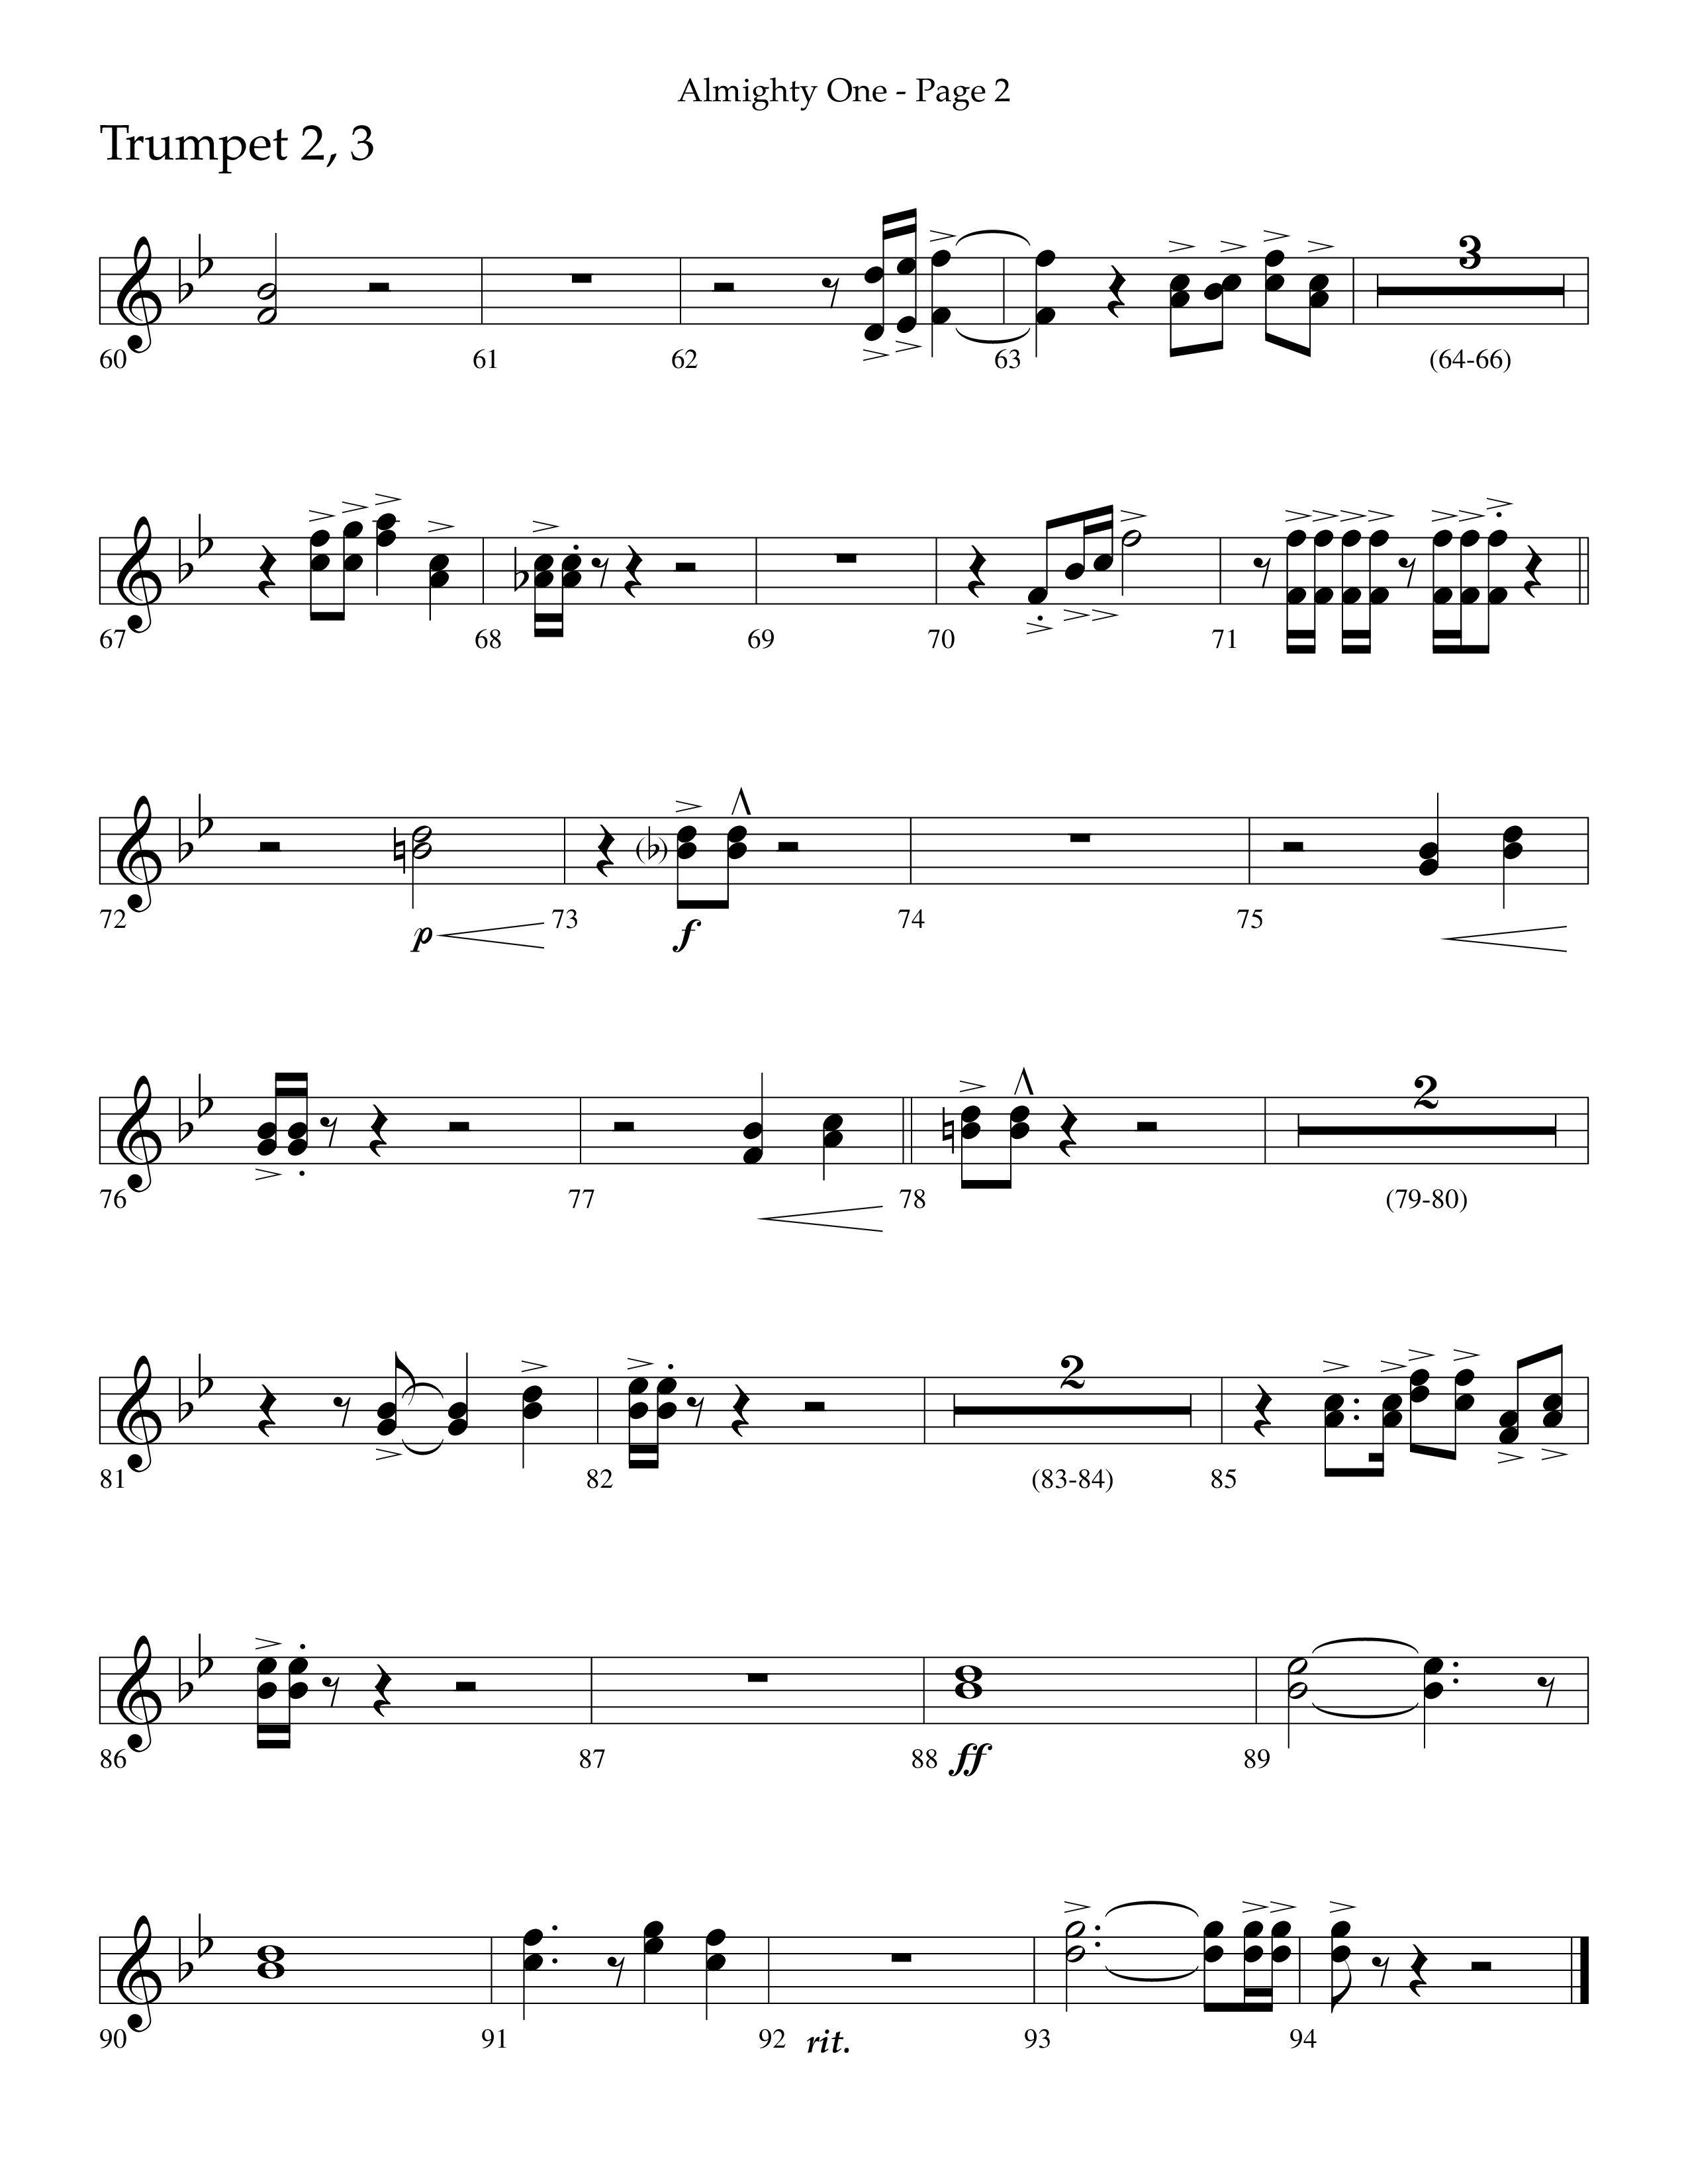 Almighty One (Choral Anthem SATB) Trumpet 2/3 (Lifeway Choral / Arr. Bradley Knight)